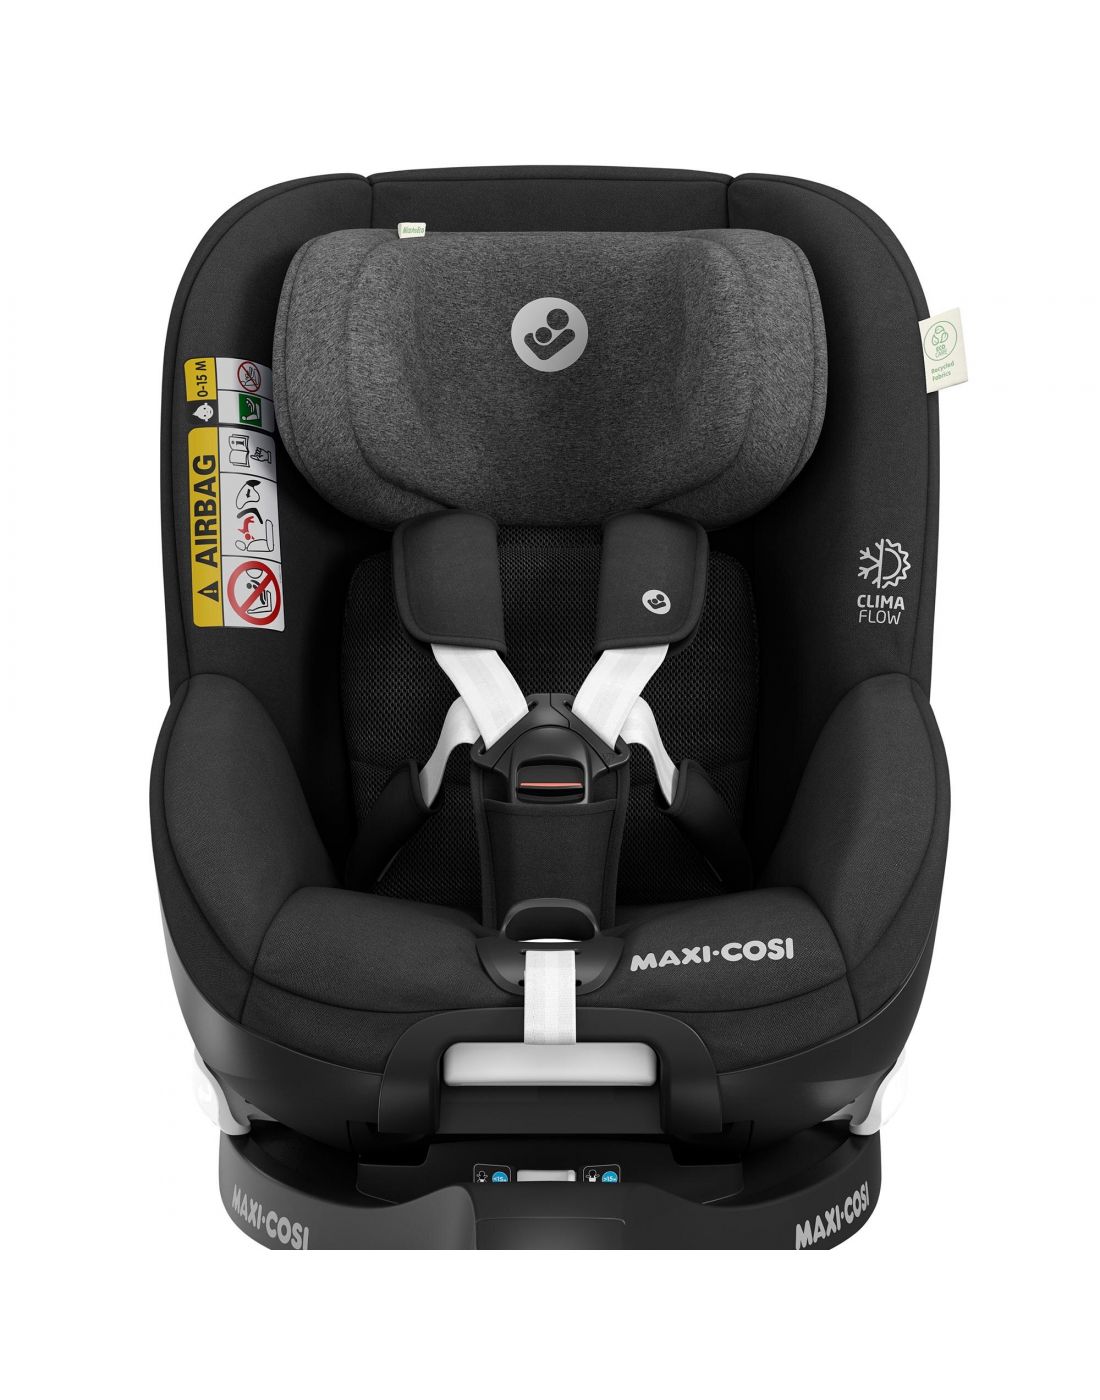 Maxi Cosi Kids Car Seat Mica Pro Eco i-Size Authentic Black, Maxi Cosi,  BR76607